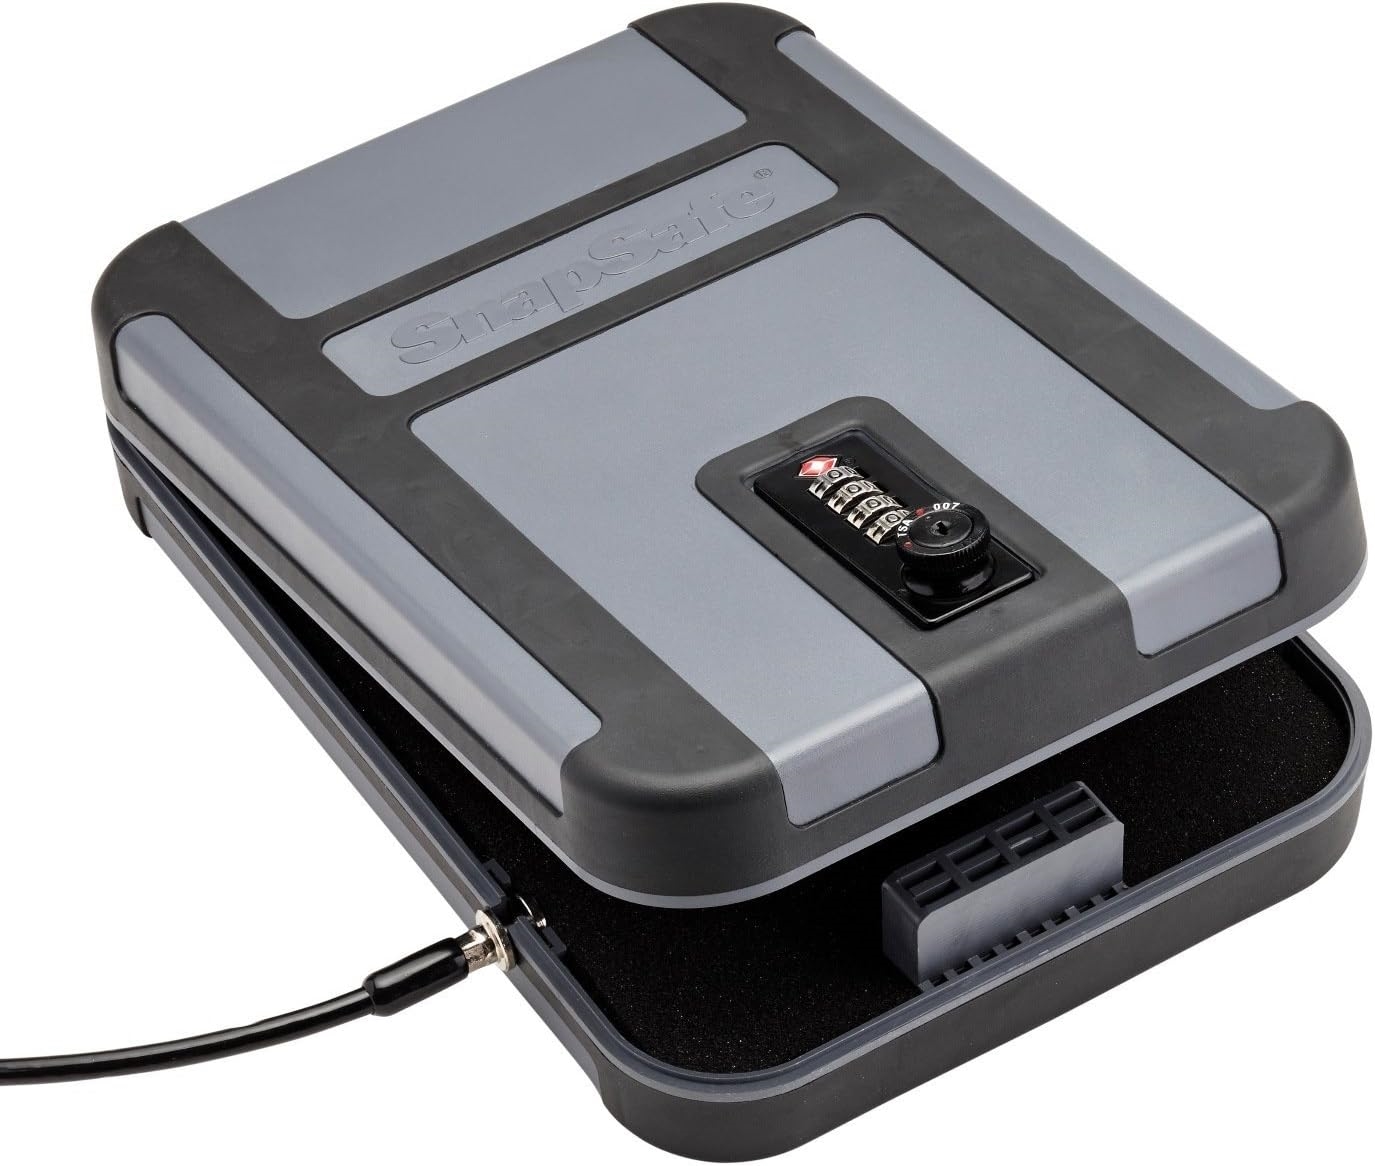 SnapSafe Treklite Portable Safe Box | DeviceDaily.com